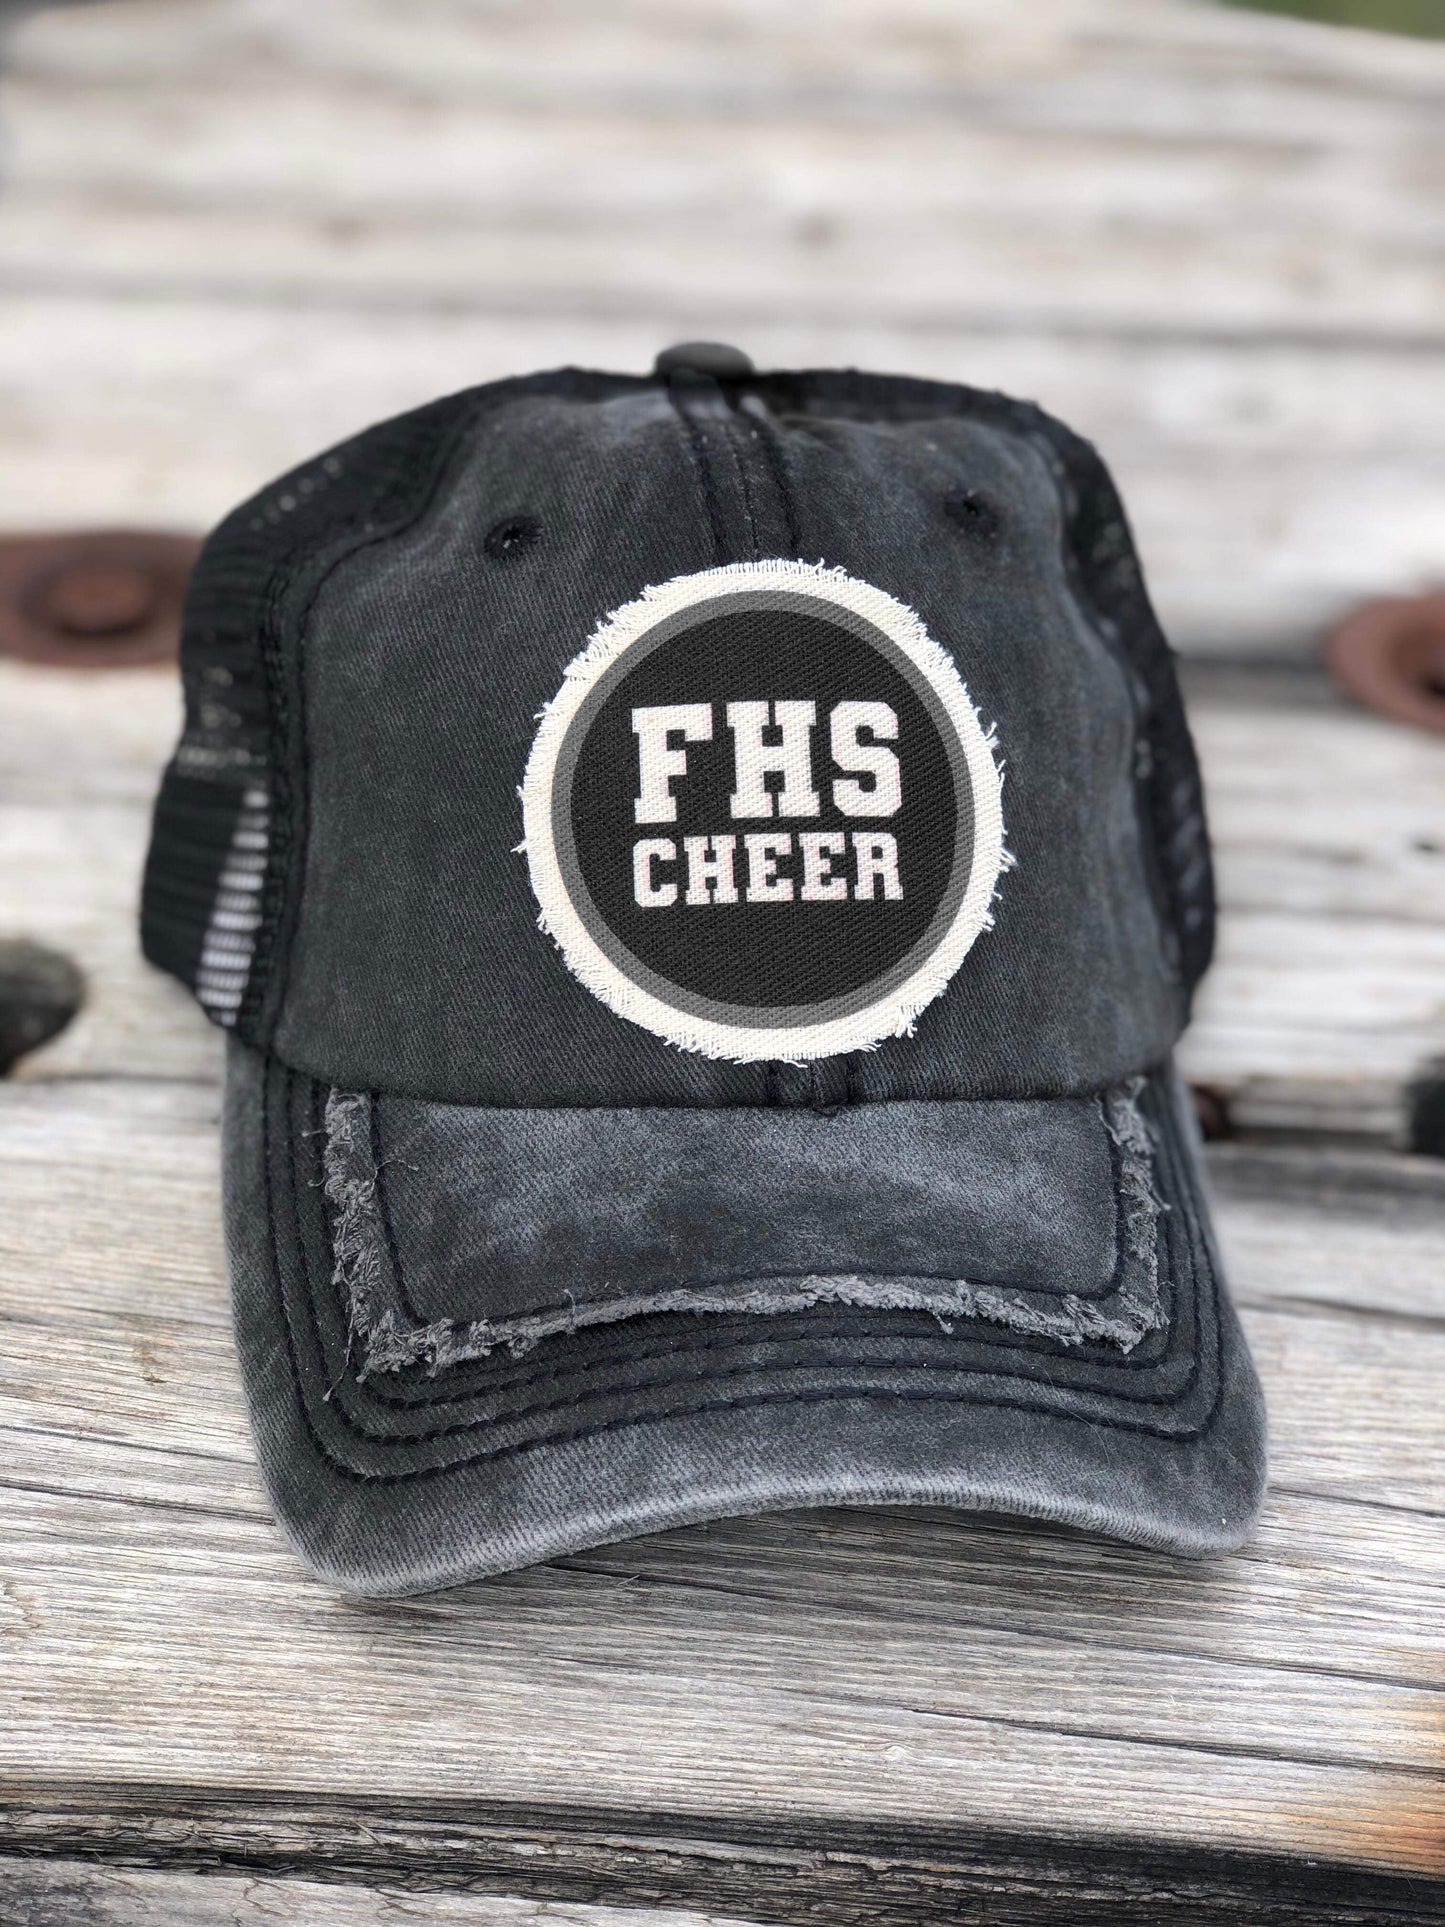 FHS Farmington high school cheer hat